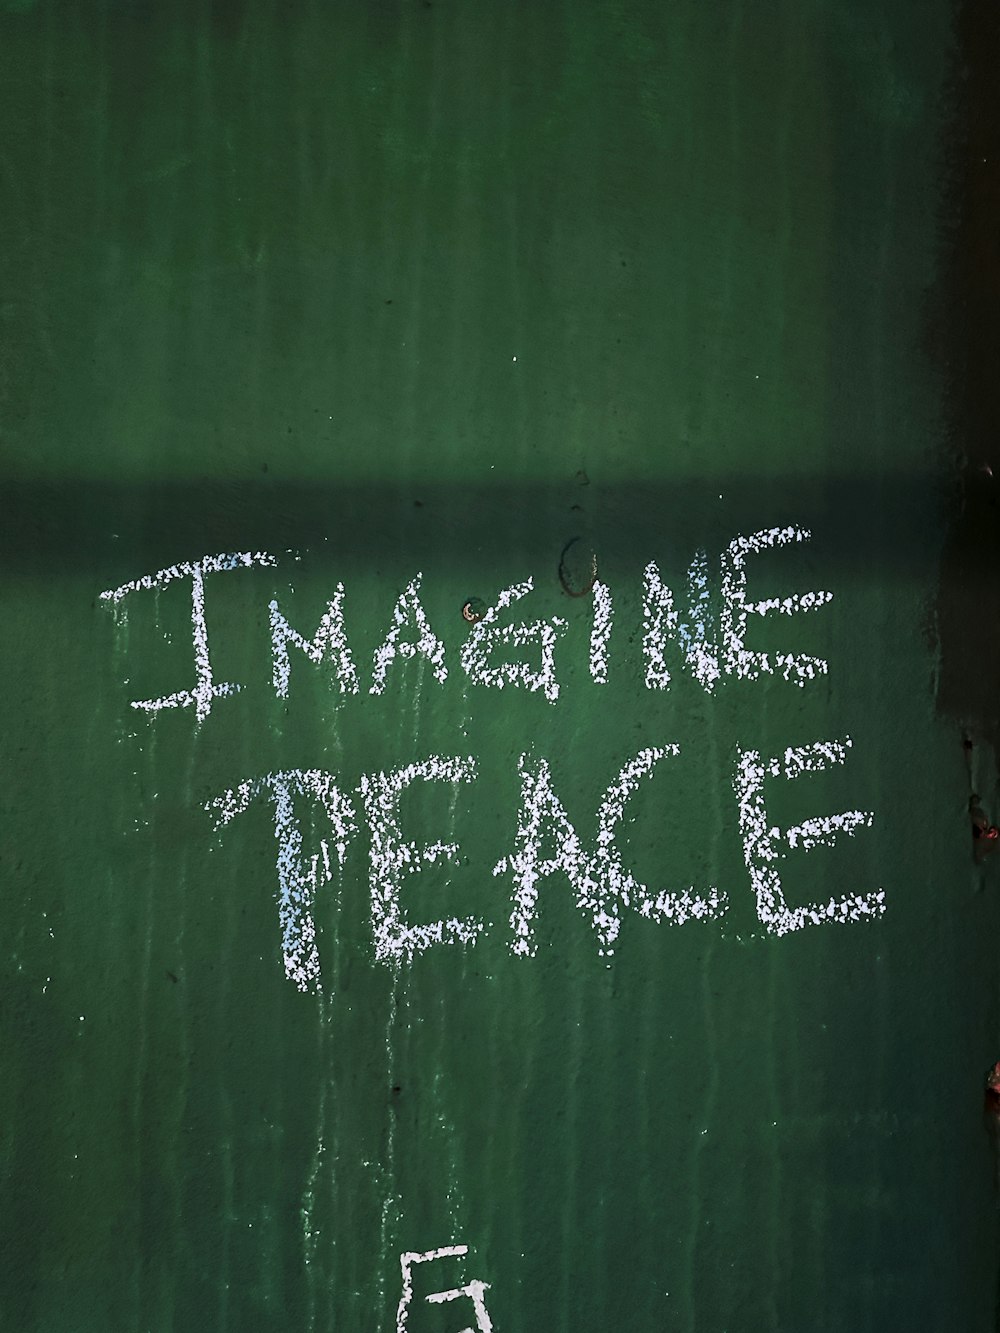 초록색 벽에 그려진 분필로 '평화를 상상하라'고 적힌 그림